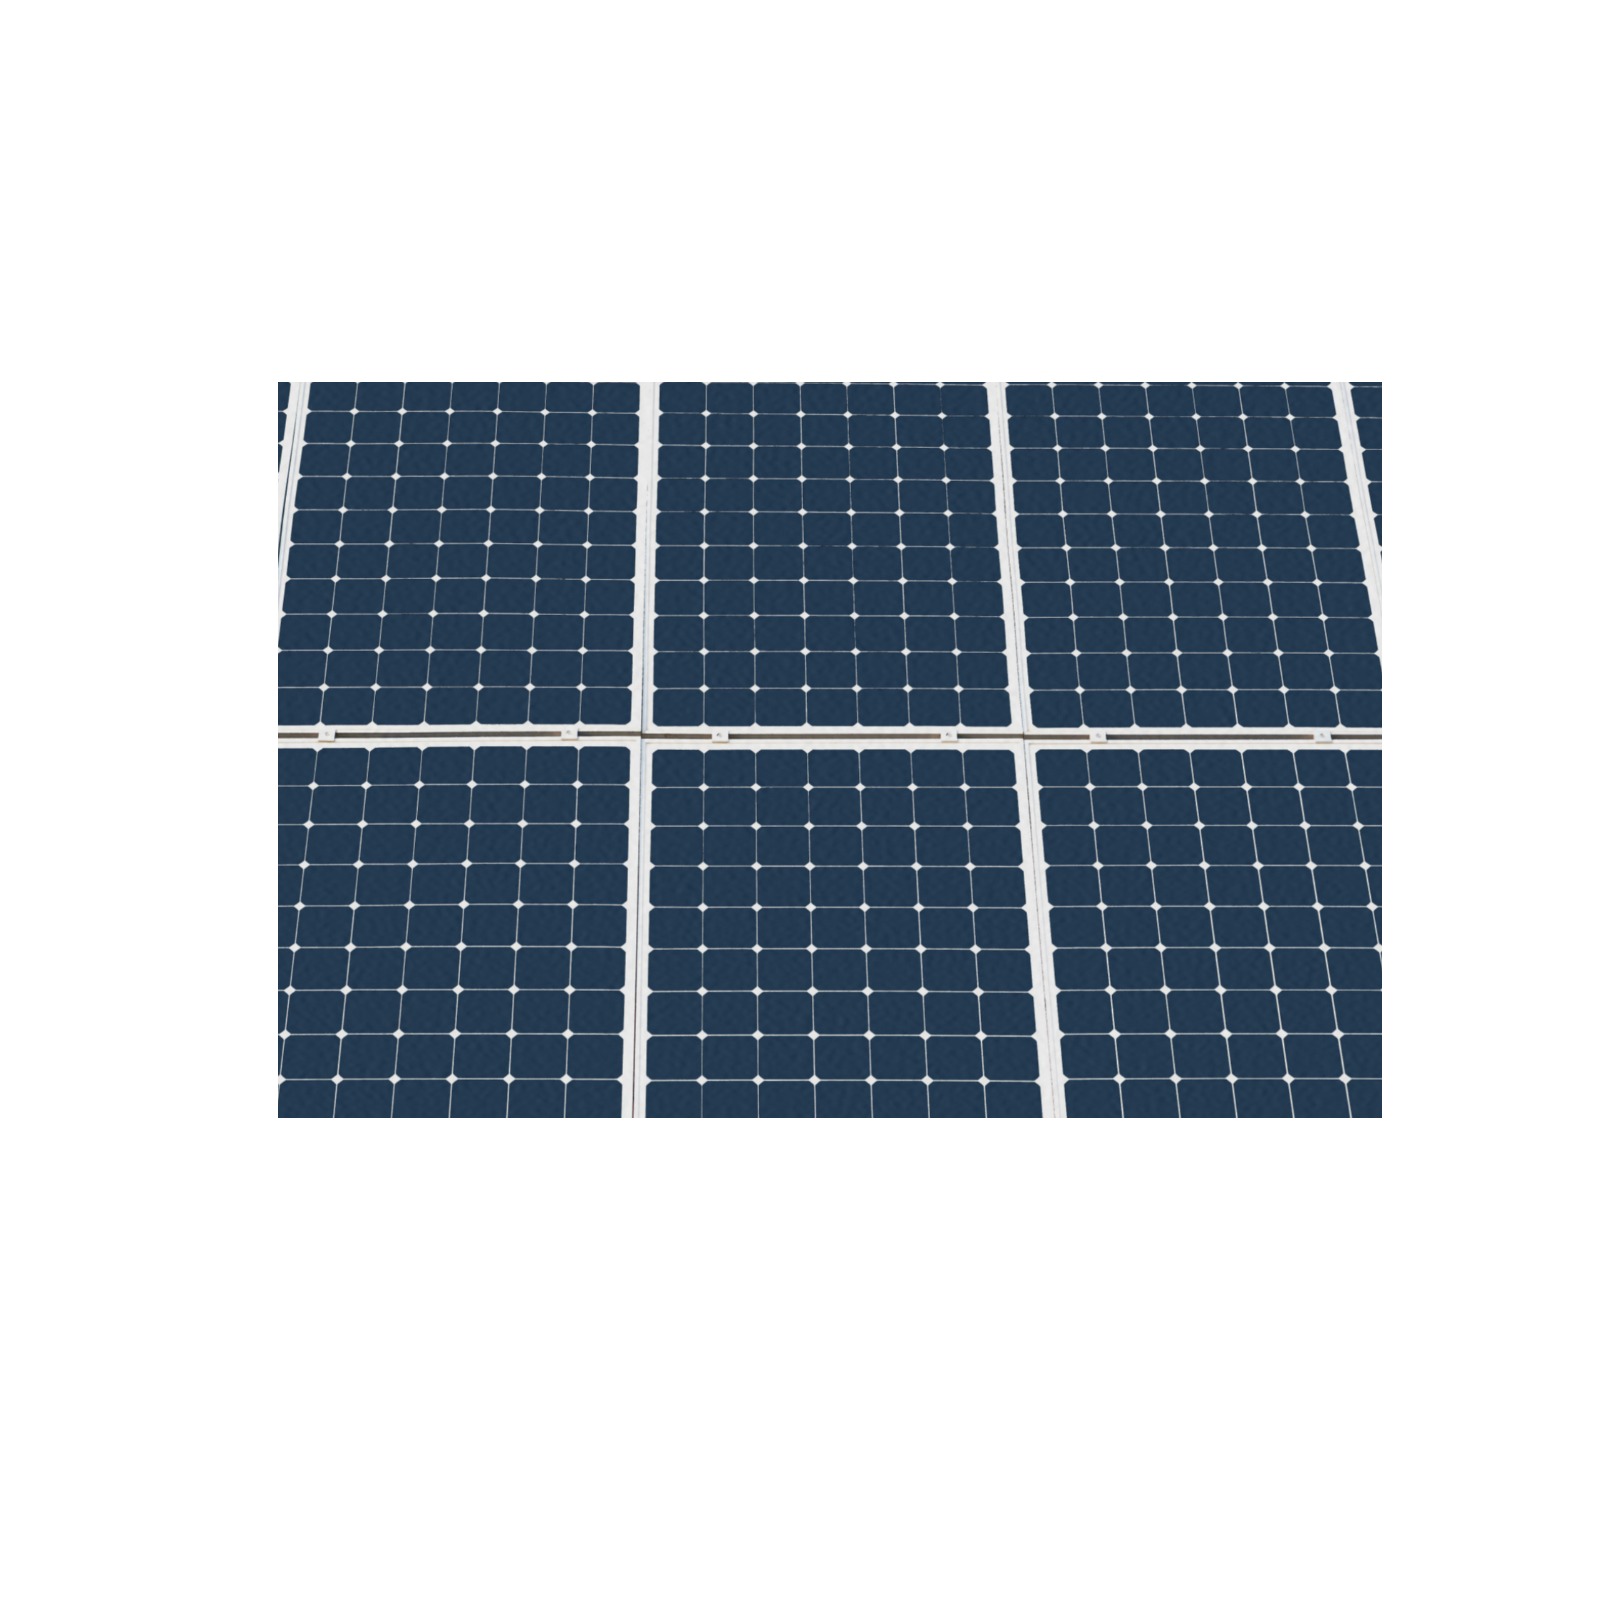 Solar Technology Power Panel Image Sun Energy Frame Canvas Print 48"x32"